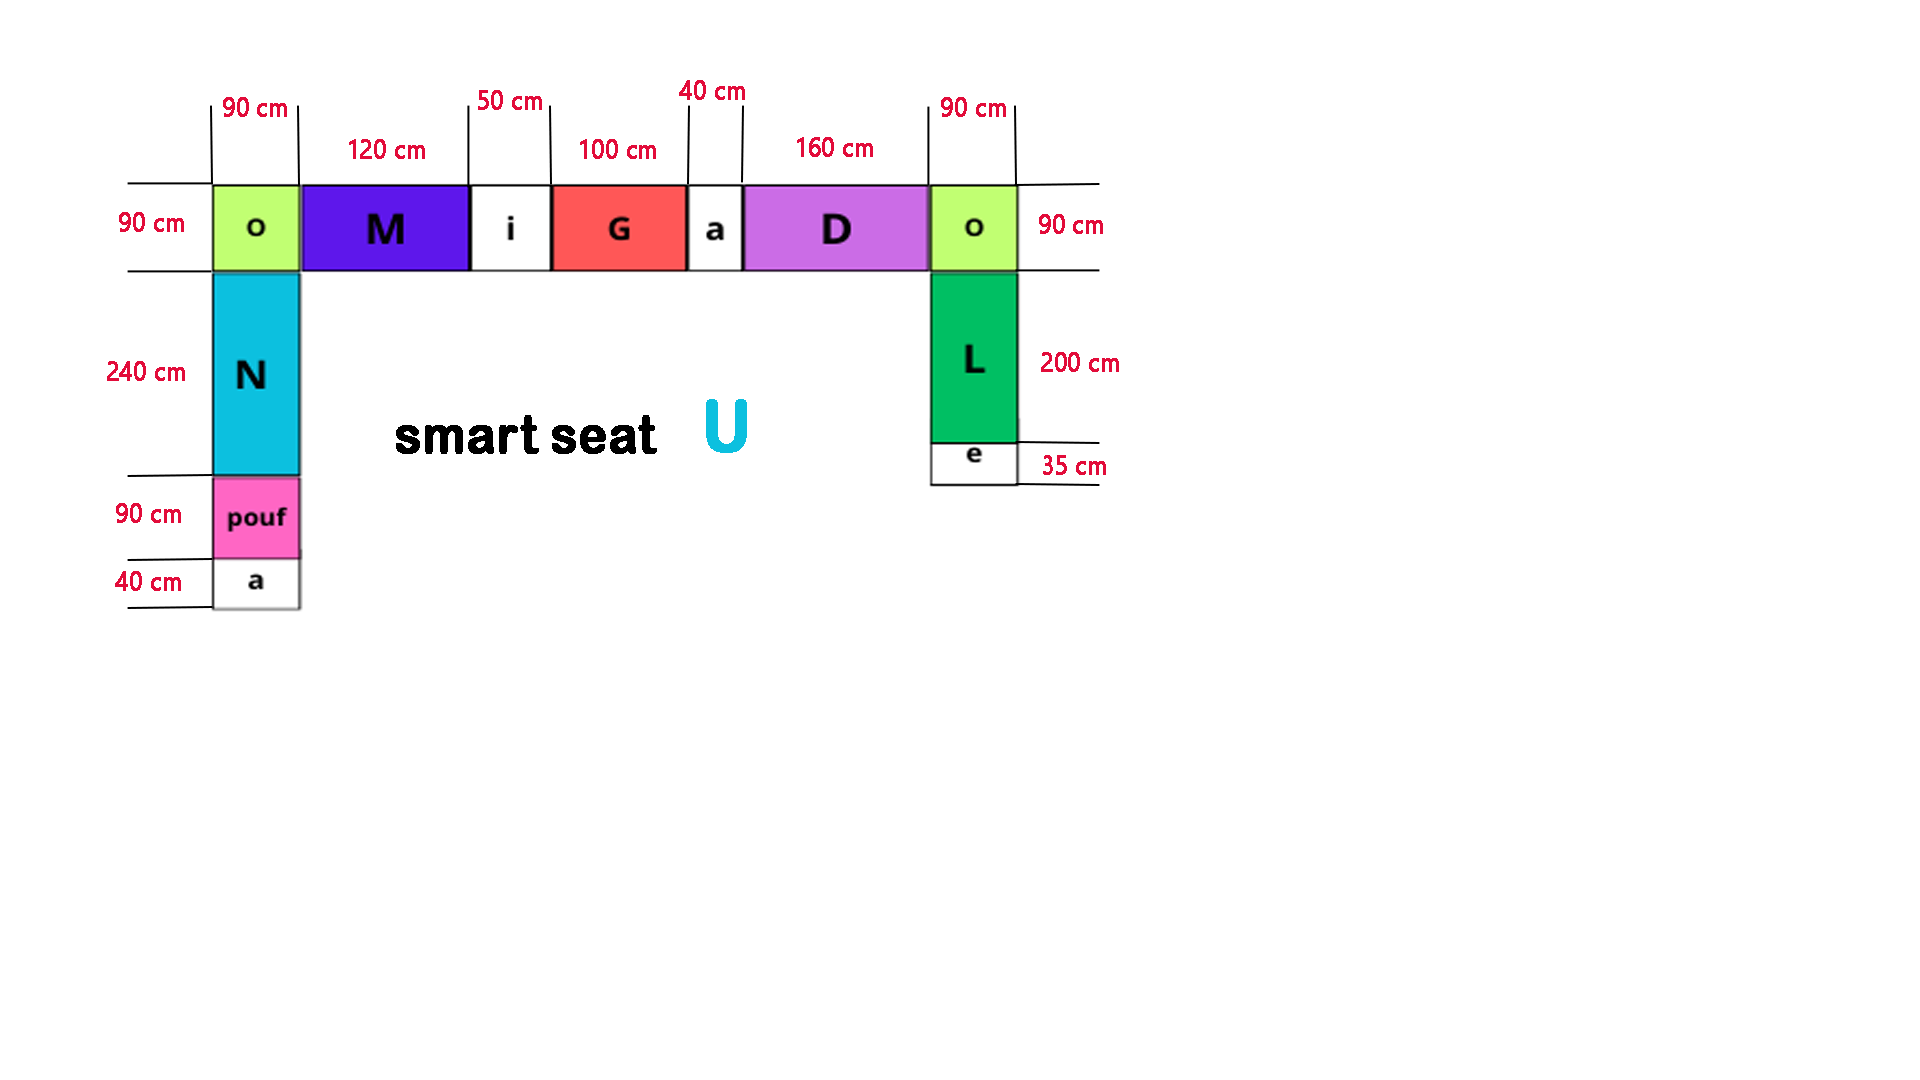 smart seat U